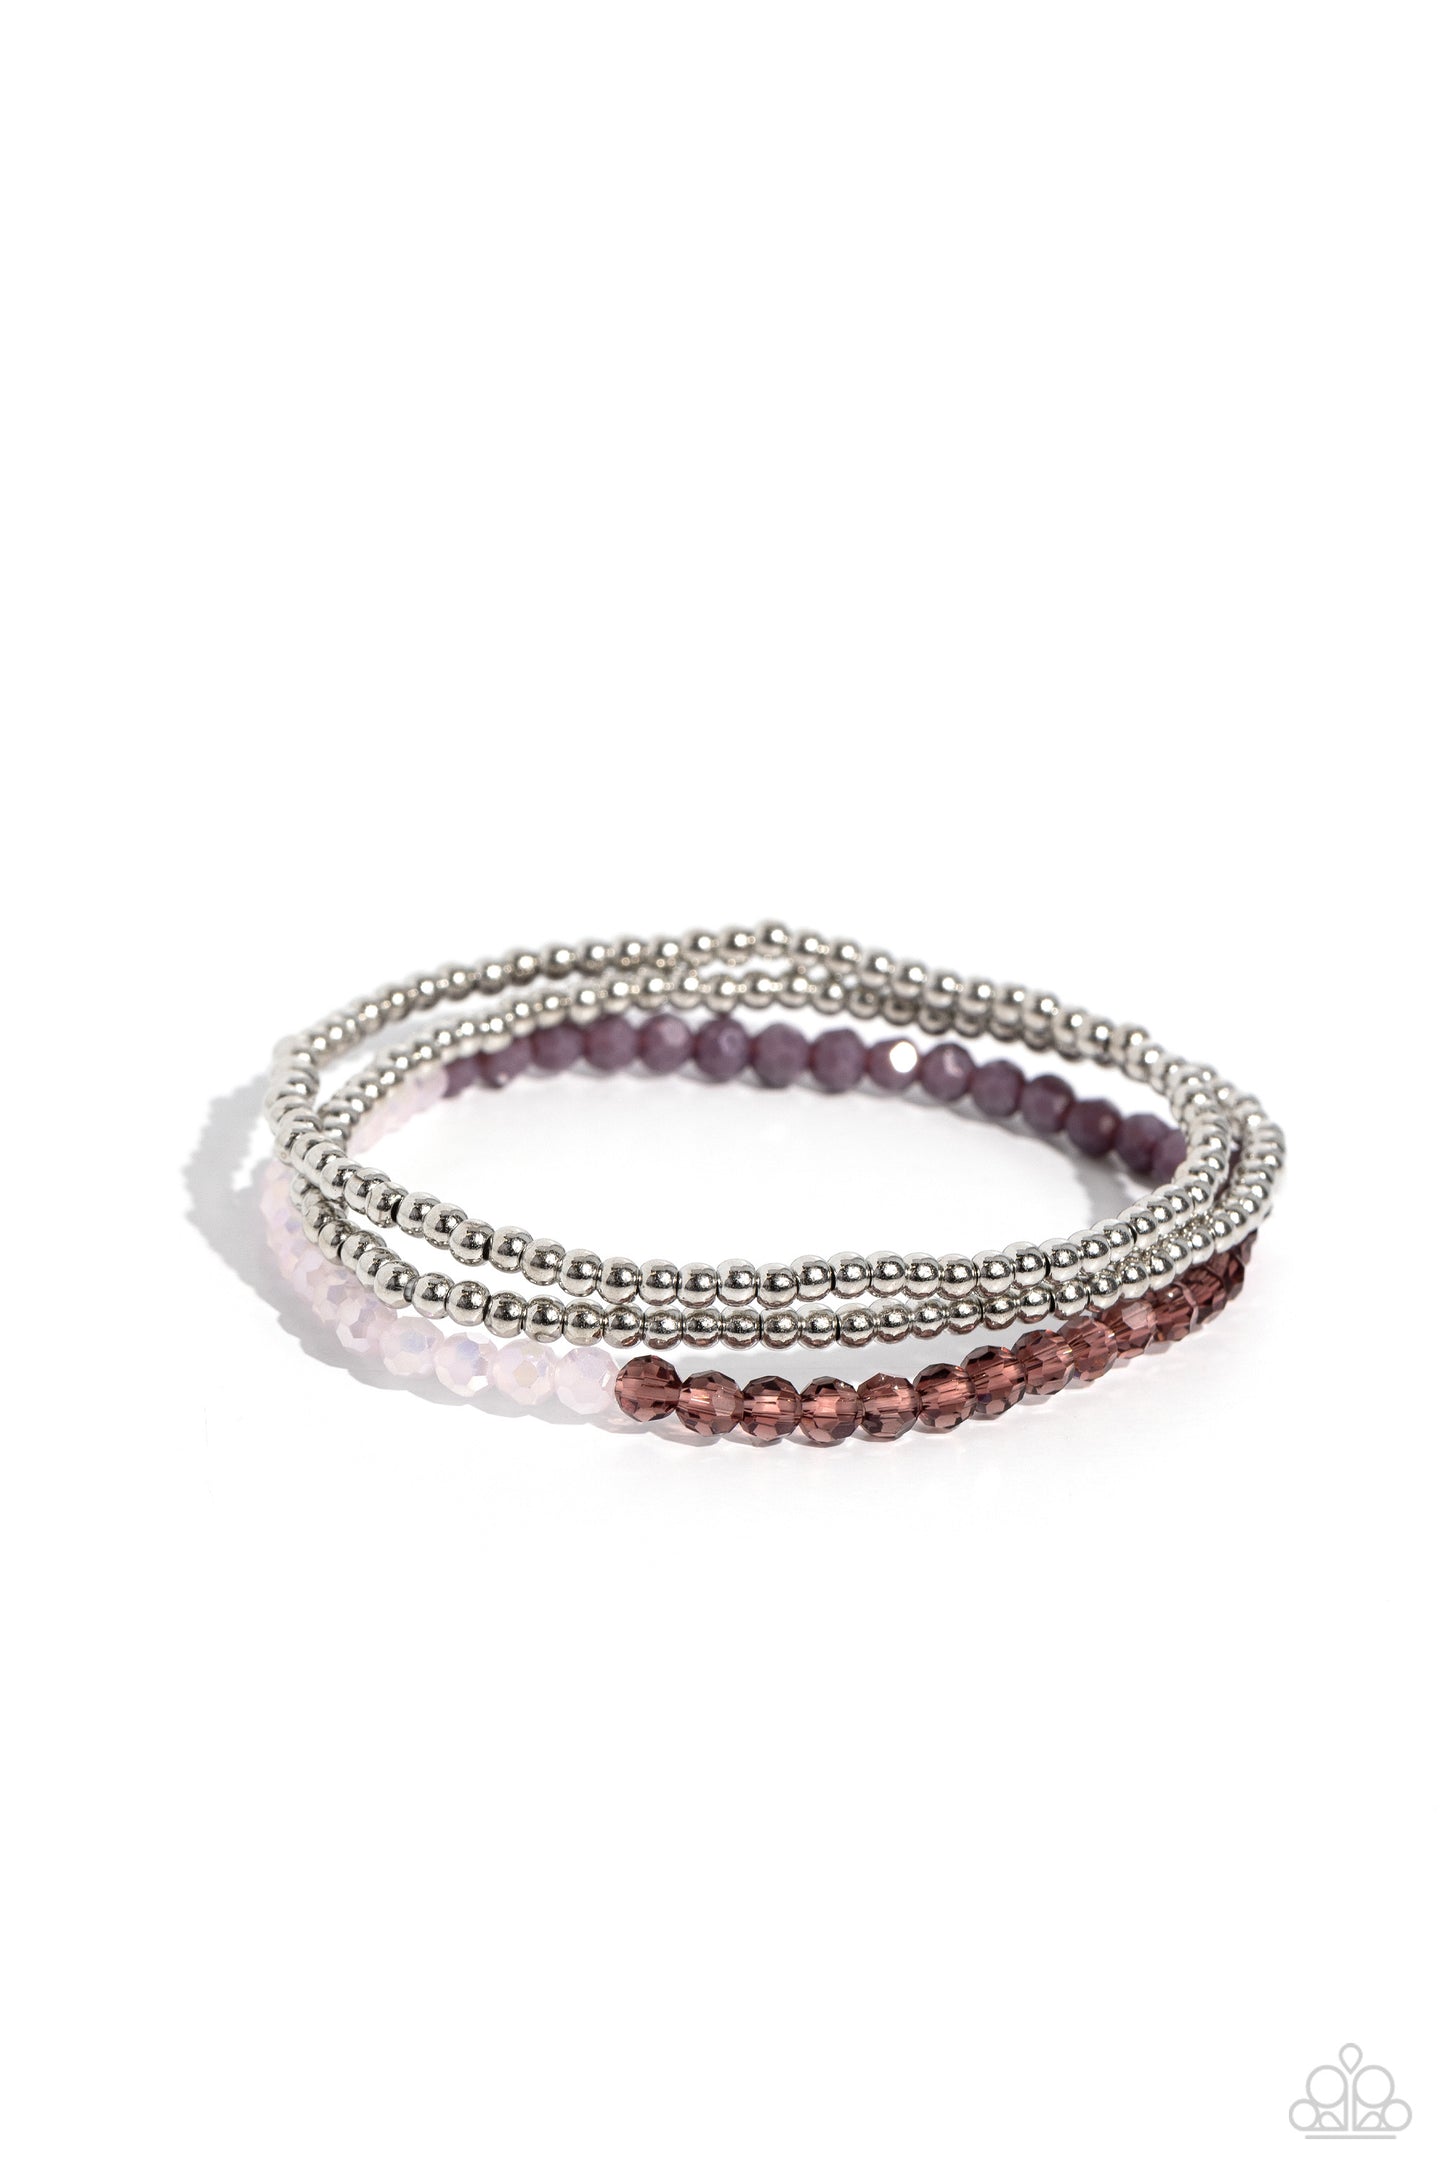 Backstage Beauty Purple Necklace & Bracelet Set - Paparazzi Accessories